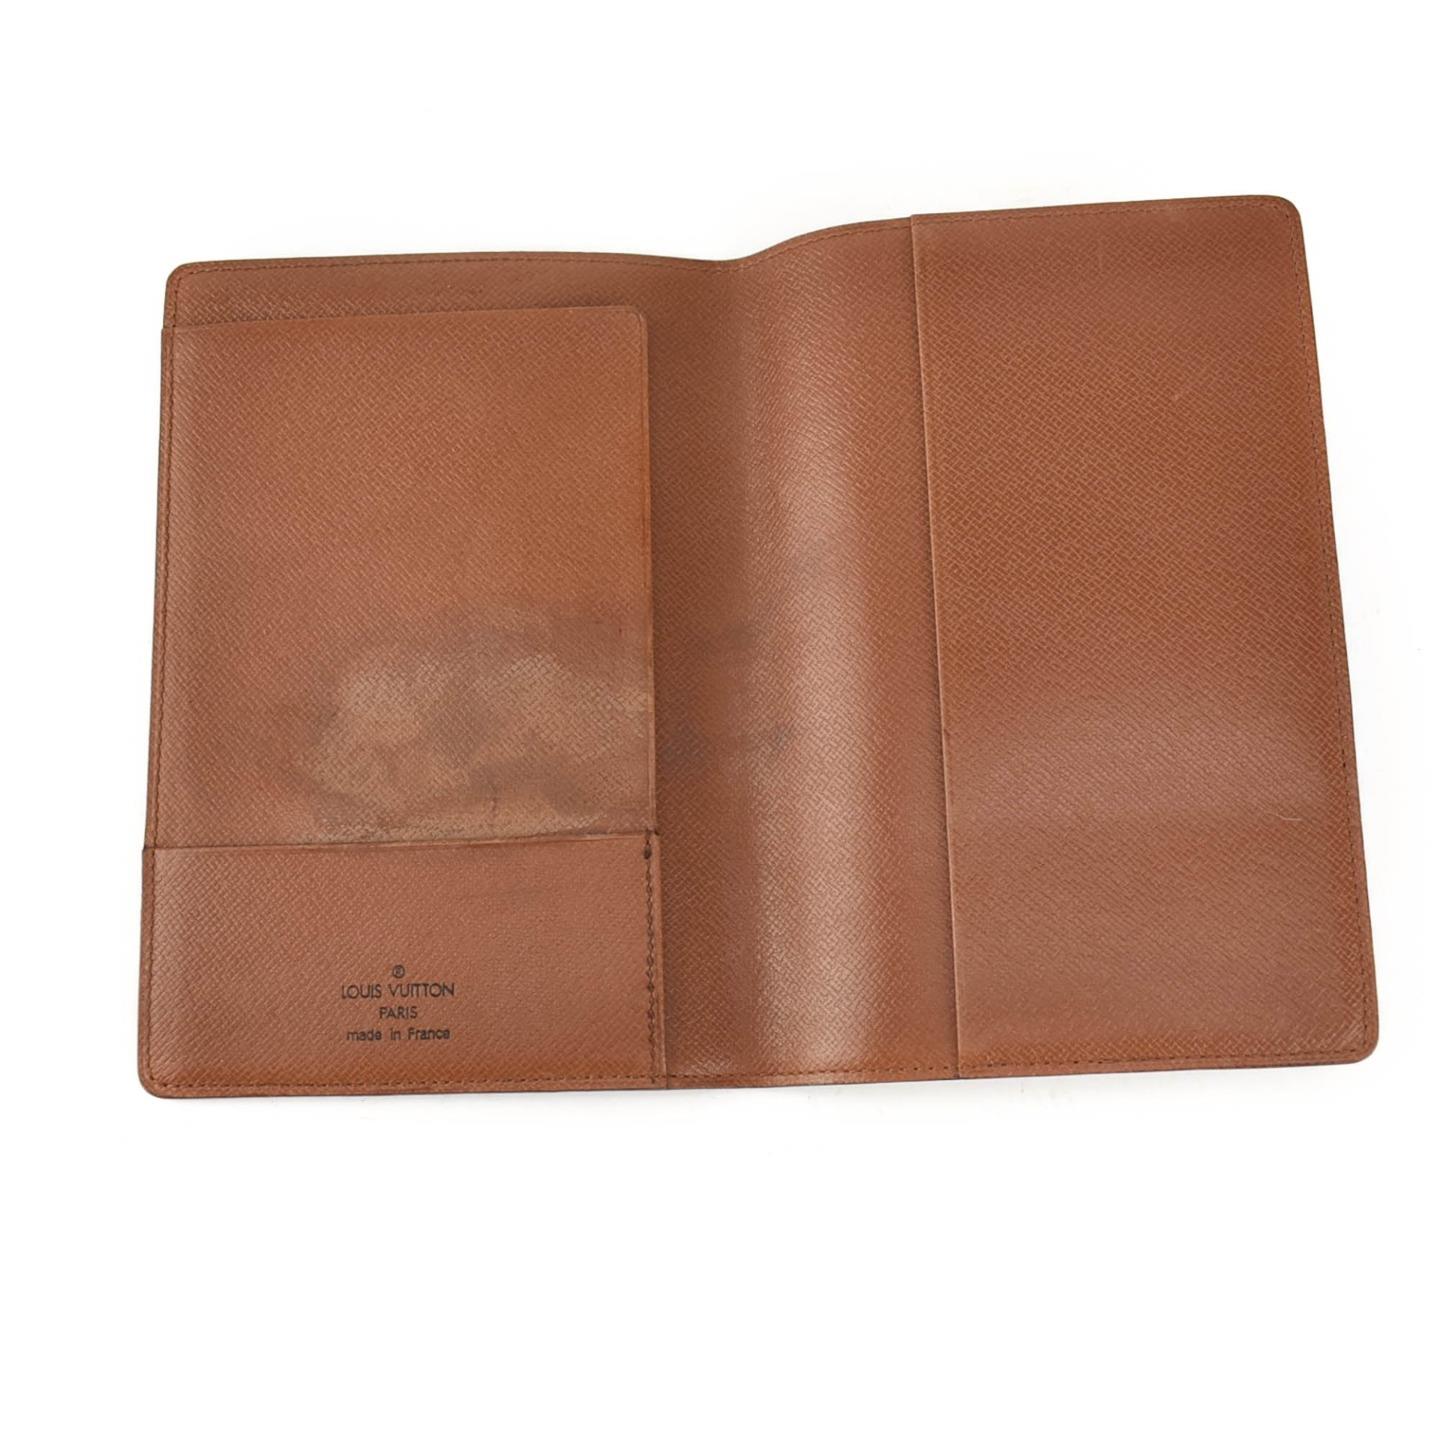 LOUIS VUITTON: Brown, Monogram &quot;LV&quot; & Leather Passport Wallet (vx) | eBay